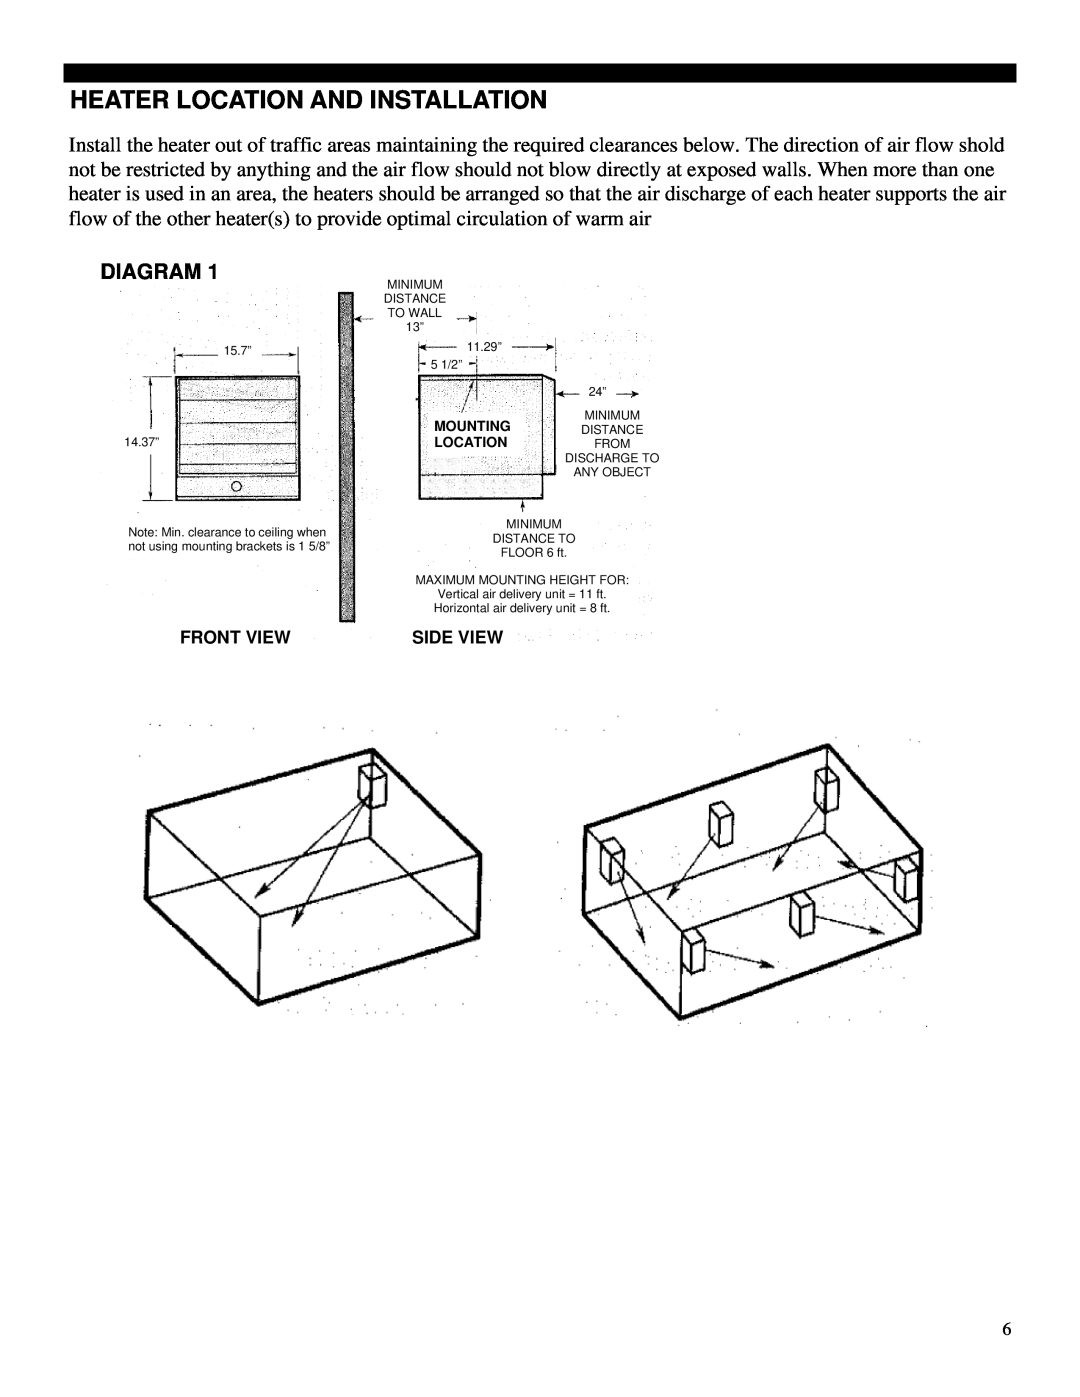 Soleus Air HI1-50-03 manual Heater Location And Installation, Diagram 